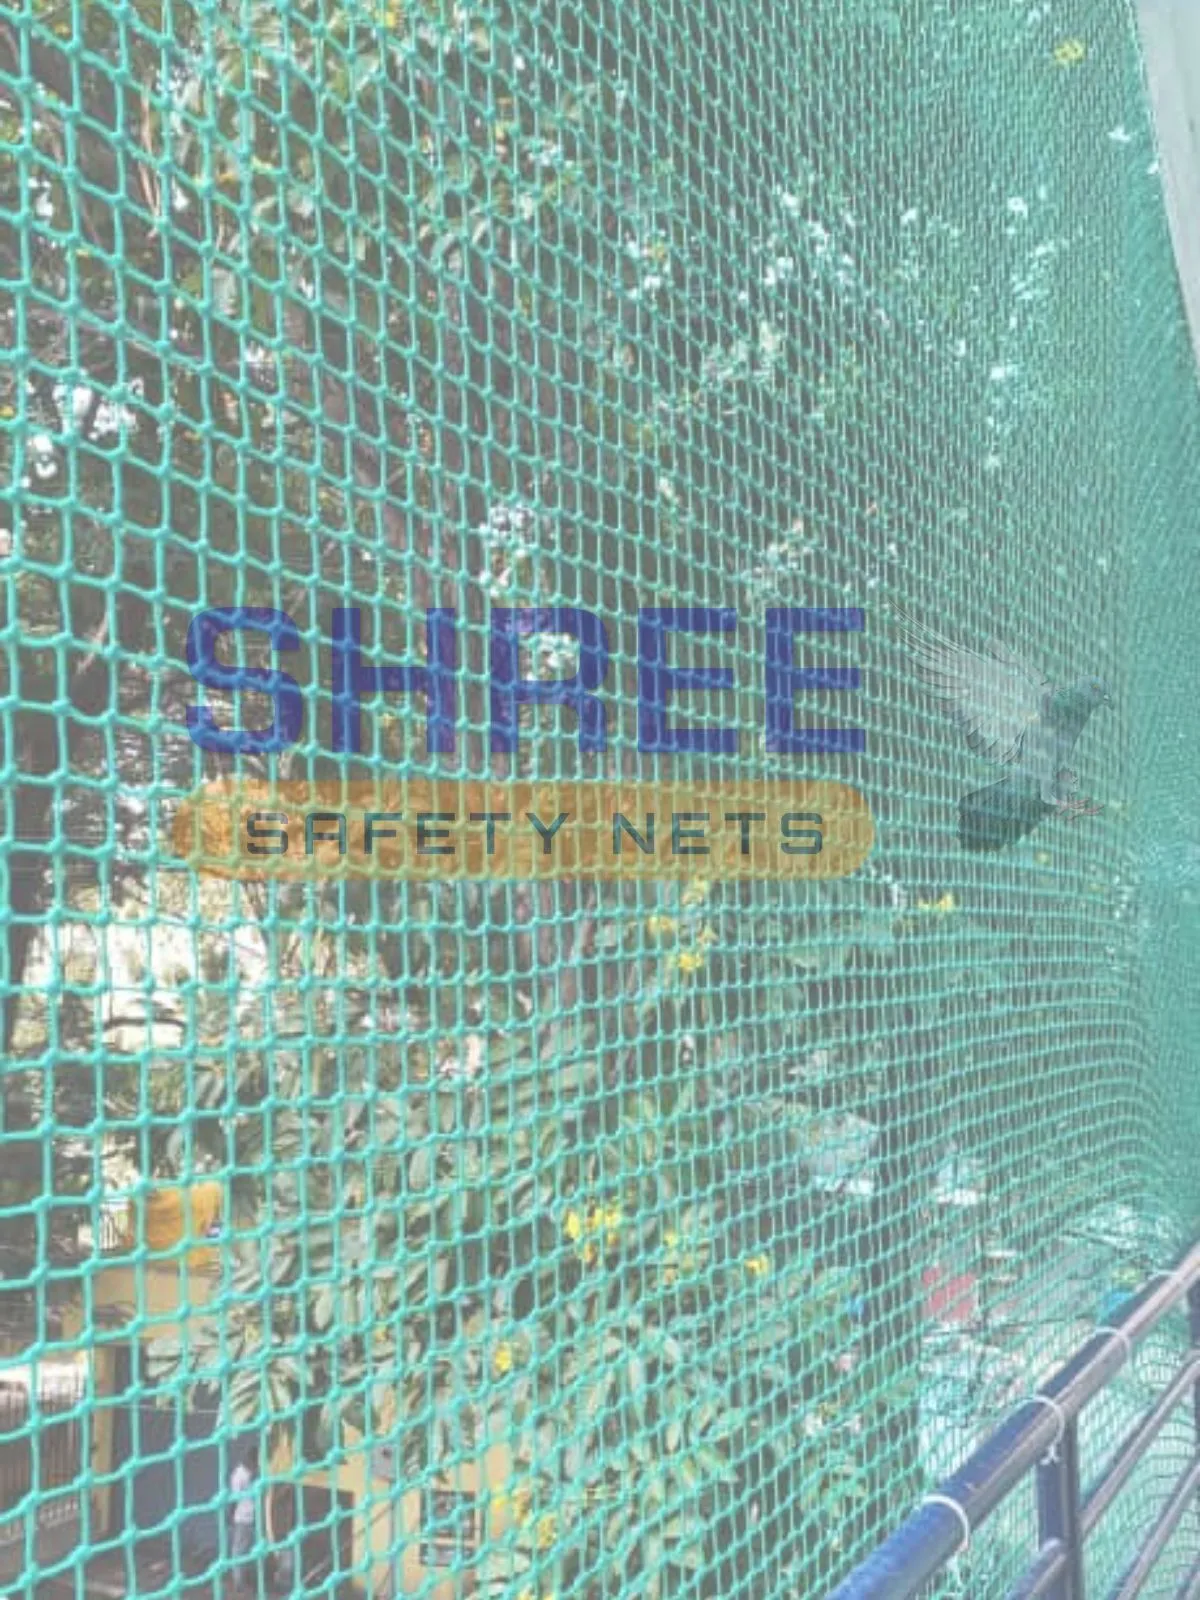 Balcony Nets Installation in Chennai